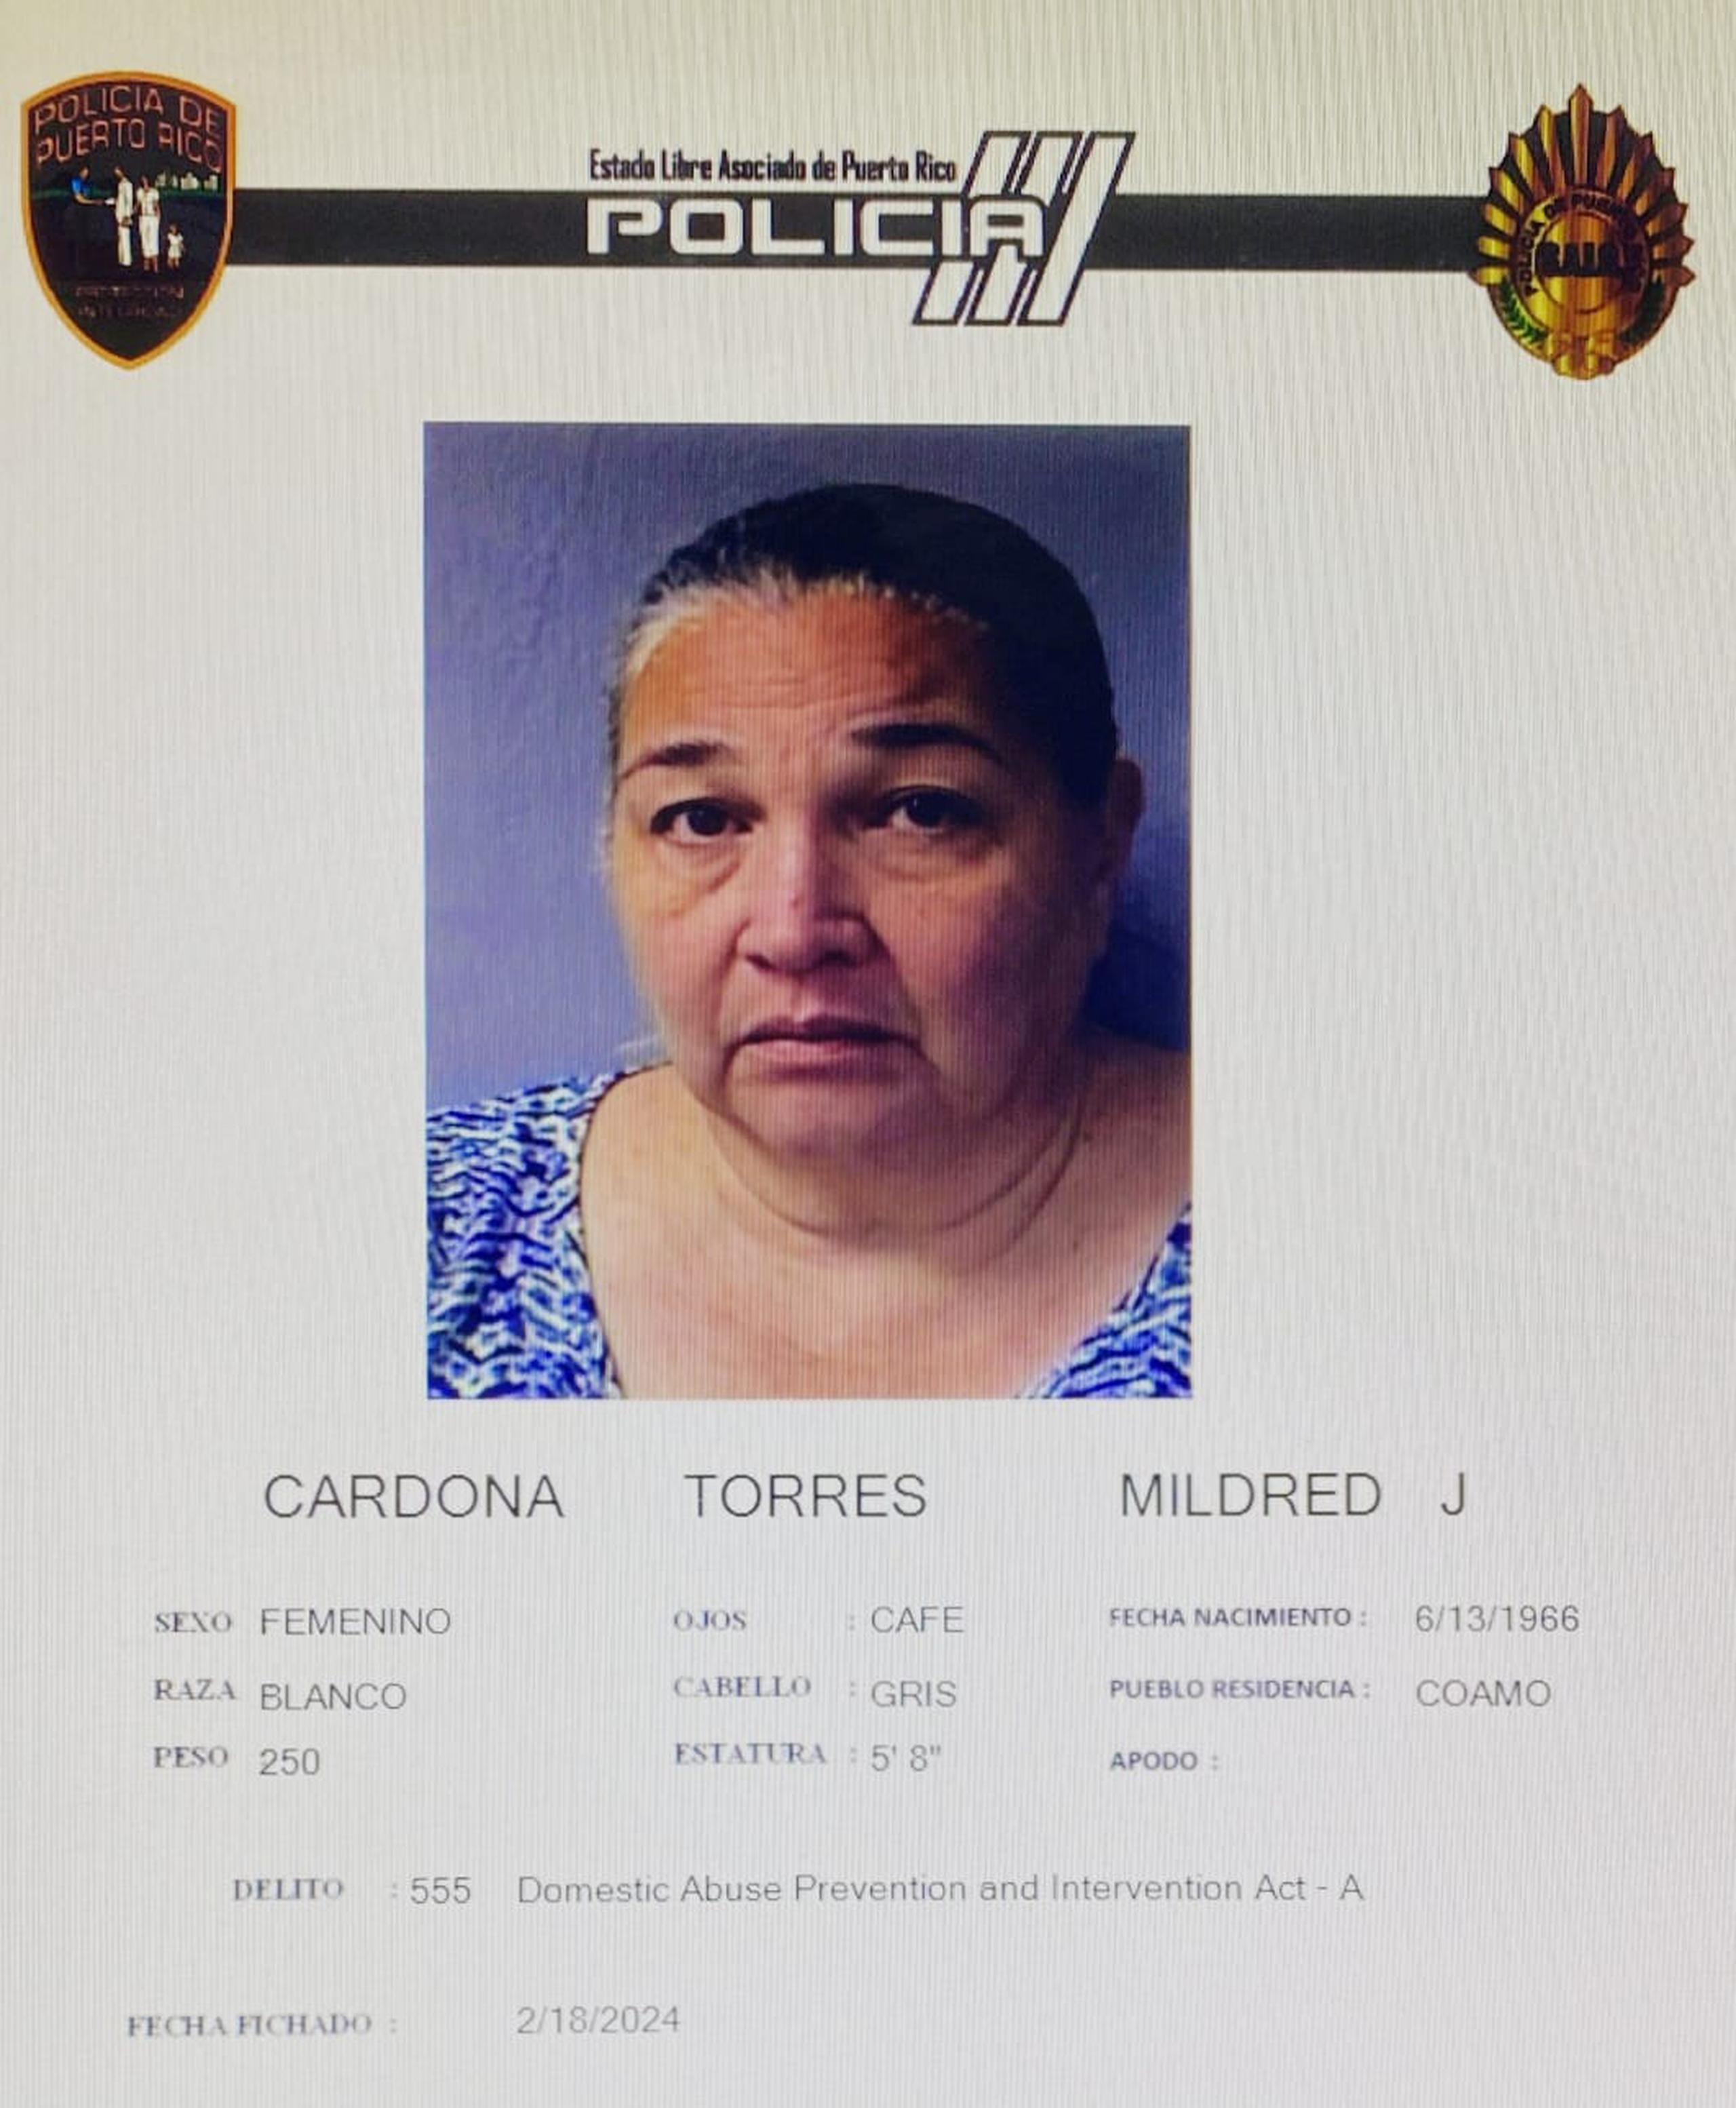 Mildred J. Cardona Torres, de 57 años, está acusada por violación a los artículos 3.1 (maltrato) y 3.4 (restricción de la libertad) de la Ley para la Prevención e Intervención con la Violencia Doméstica.